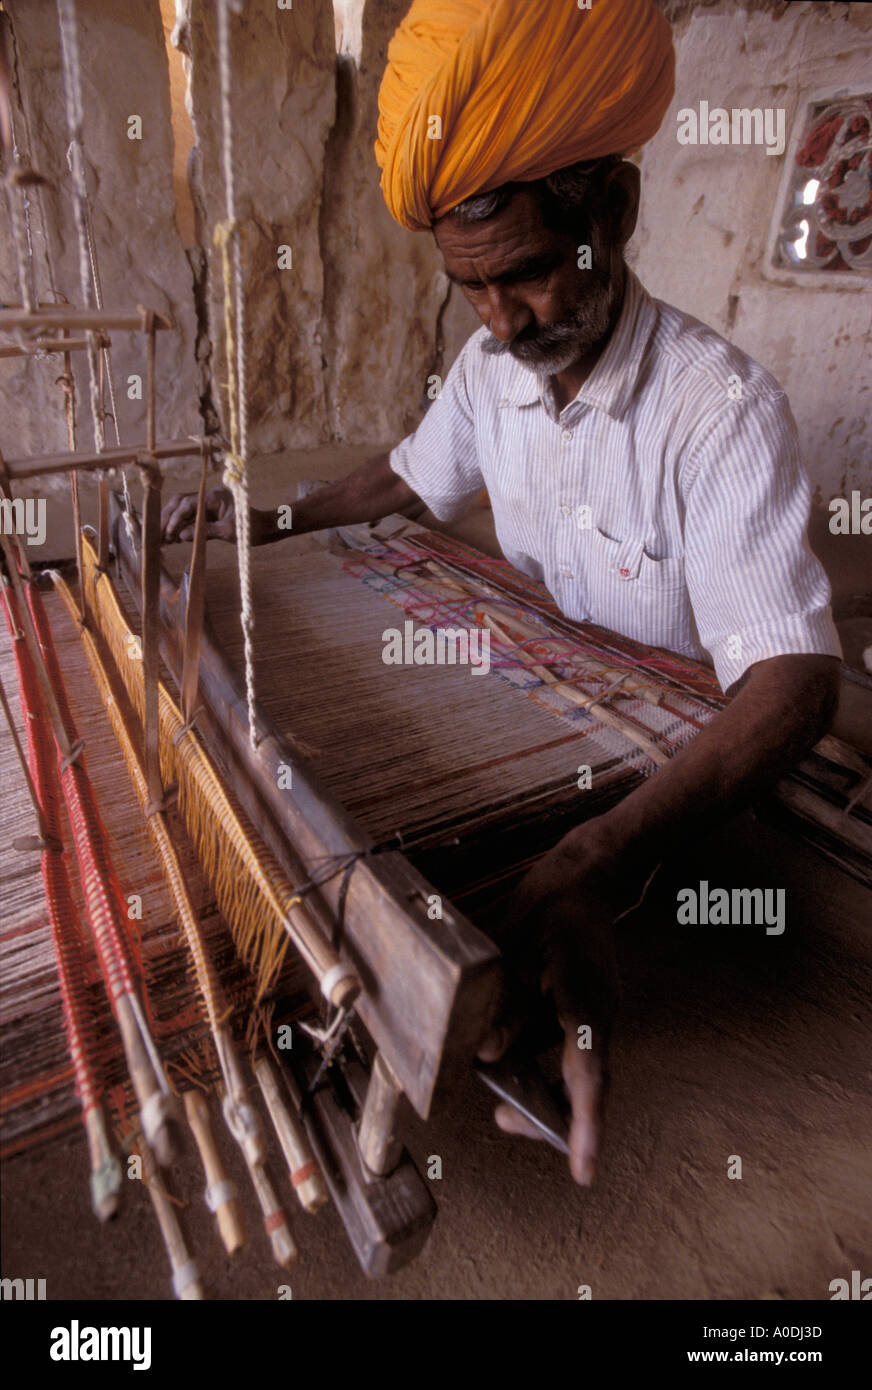 Les gens Meghwal tissant un tapis avec de la laine de chameau Art et Artisanat du désert du Rajasthan Inde Banque D'Images